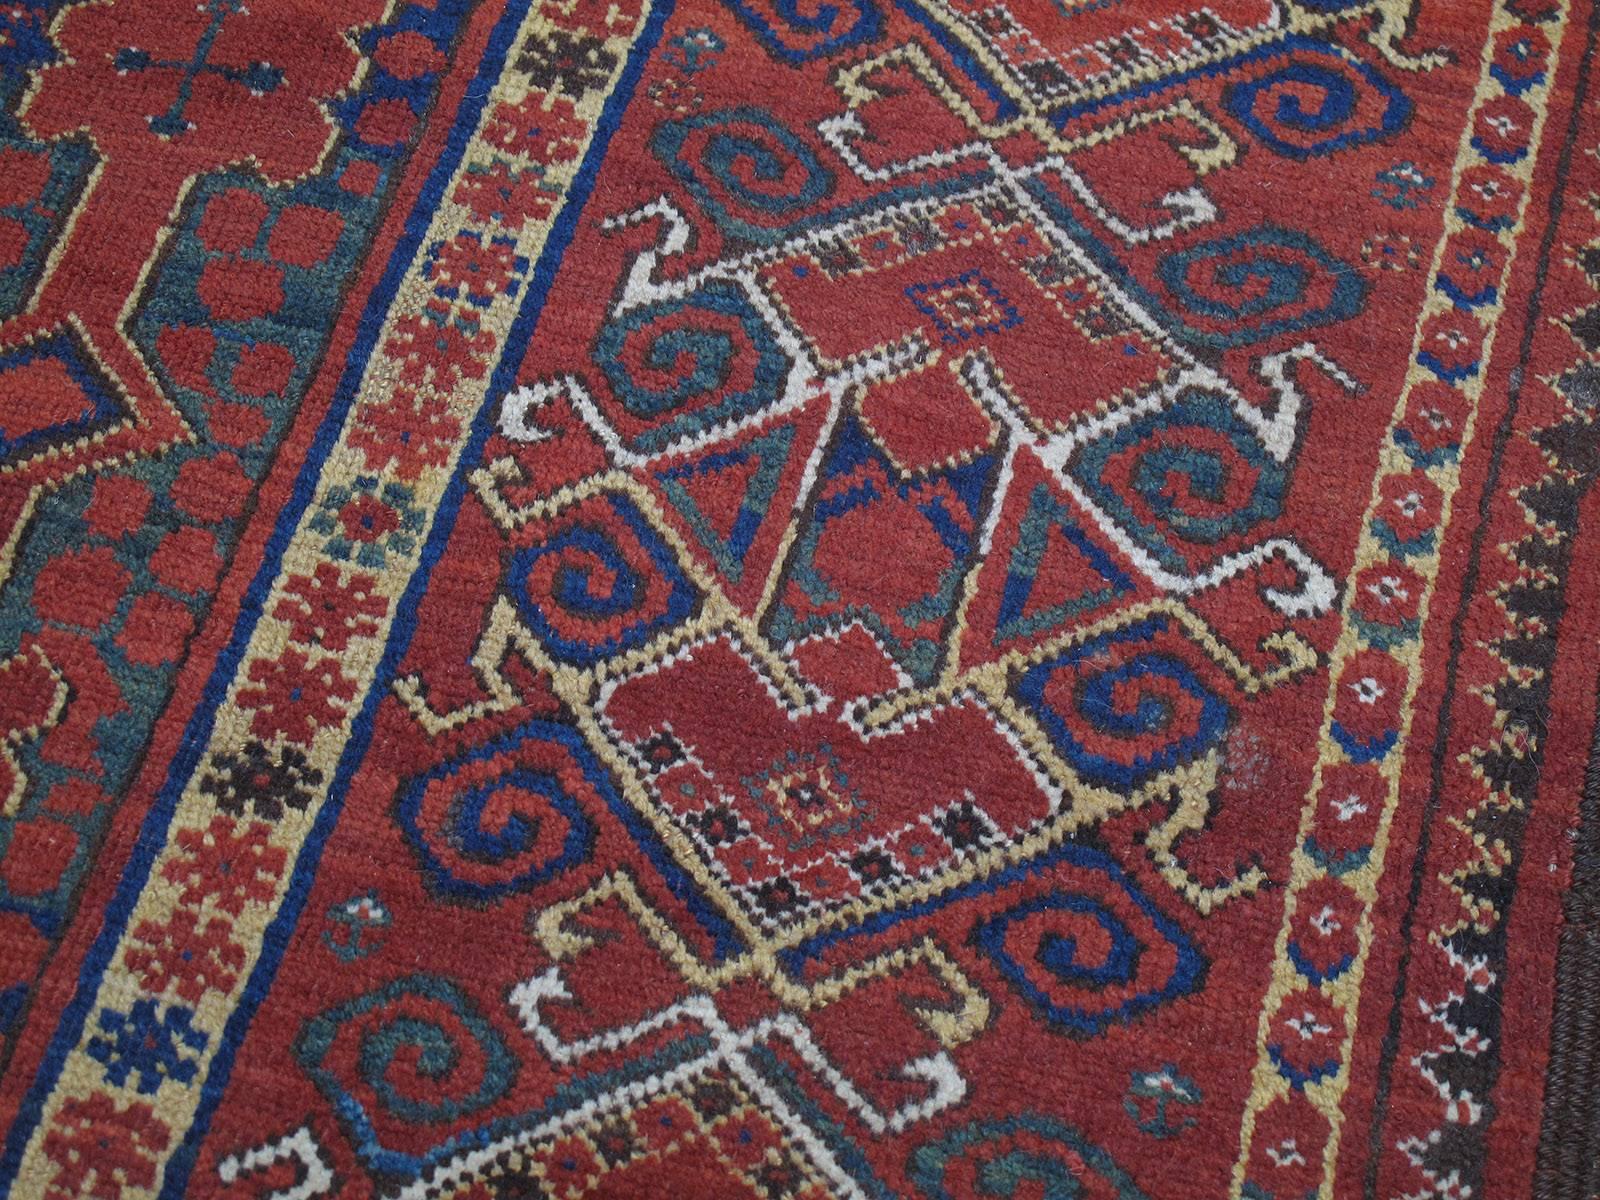 19th Century Antique Beshir Turkmen Carpet